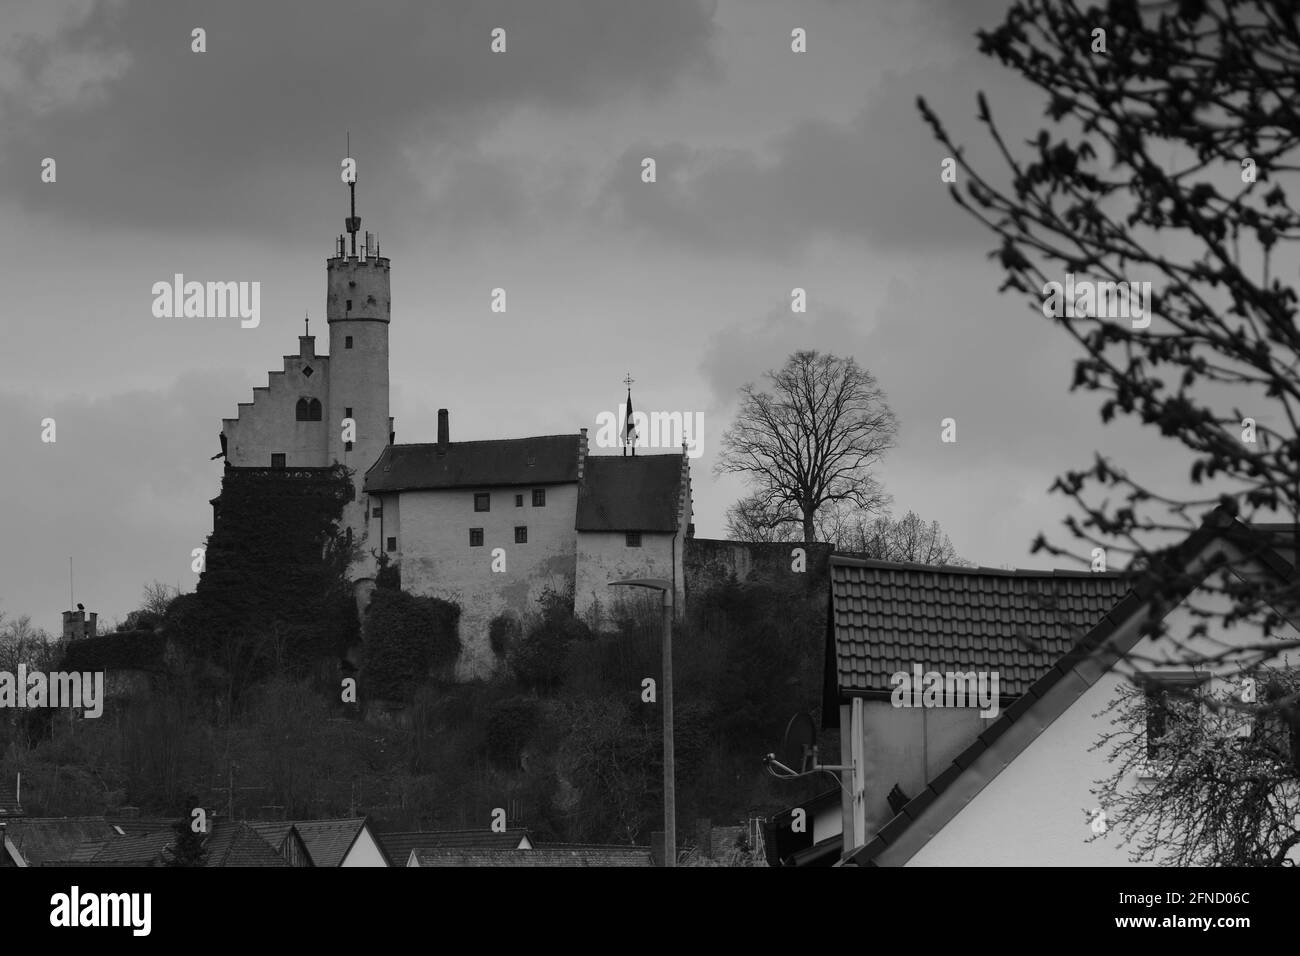 scenografica fotografia monocromatica di un castello medievale Foto Stock